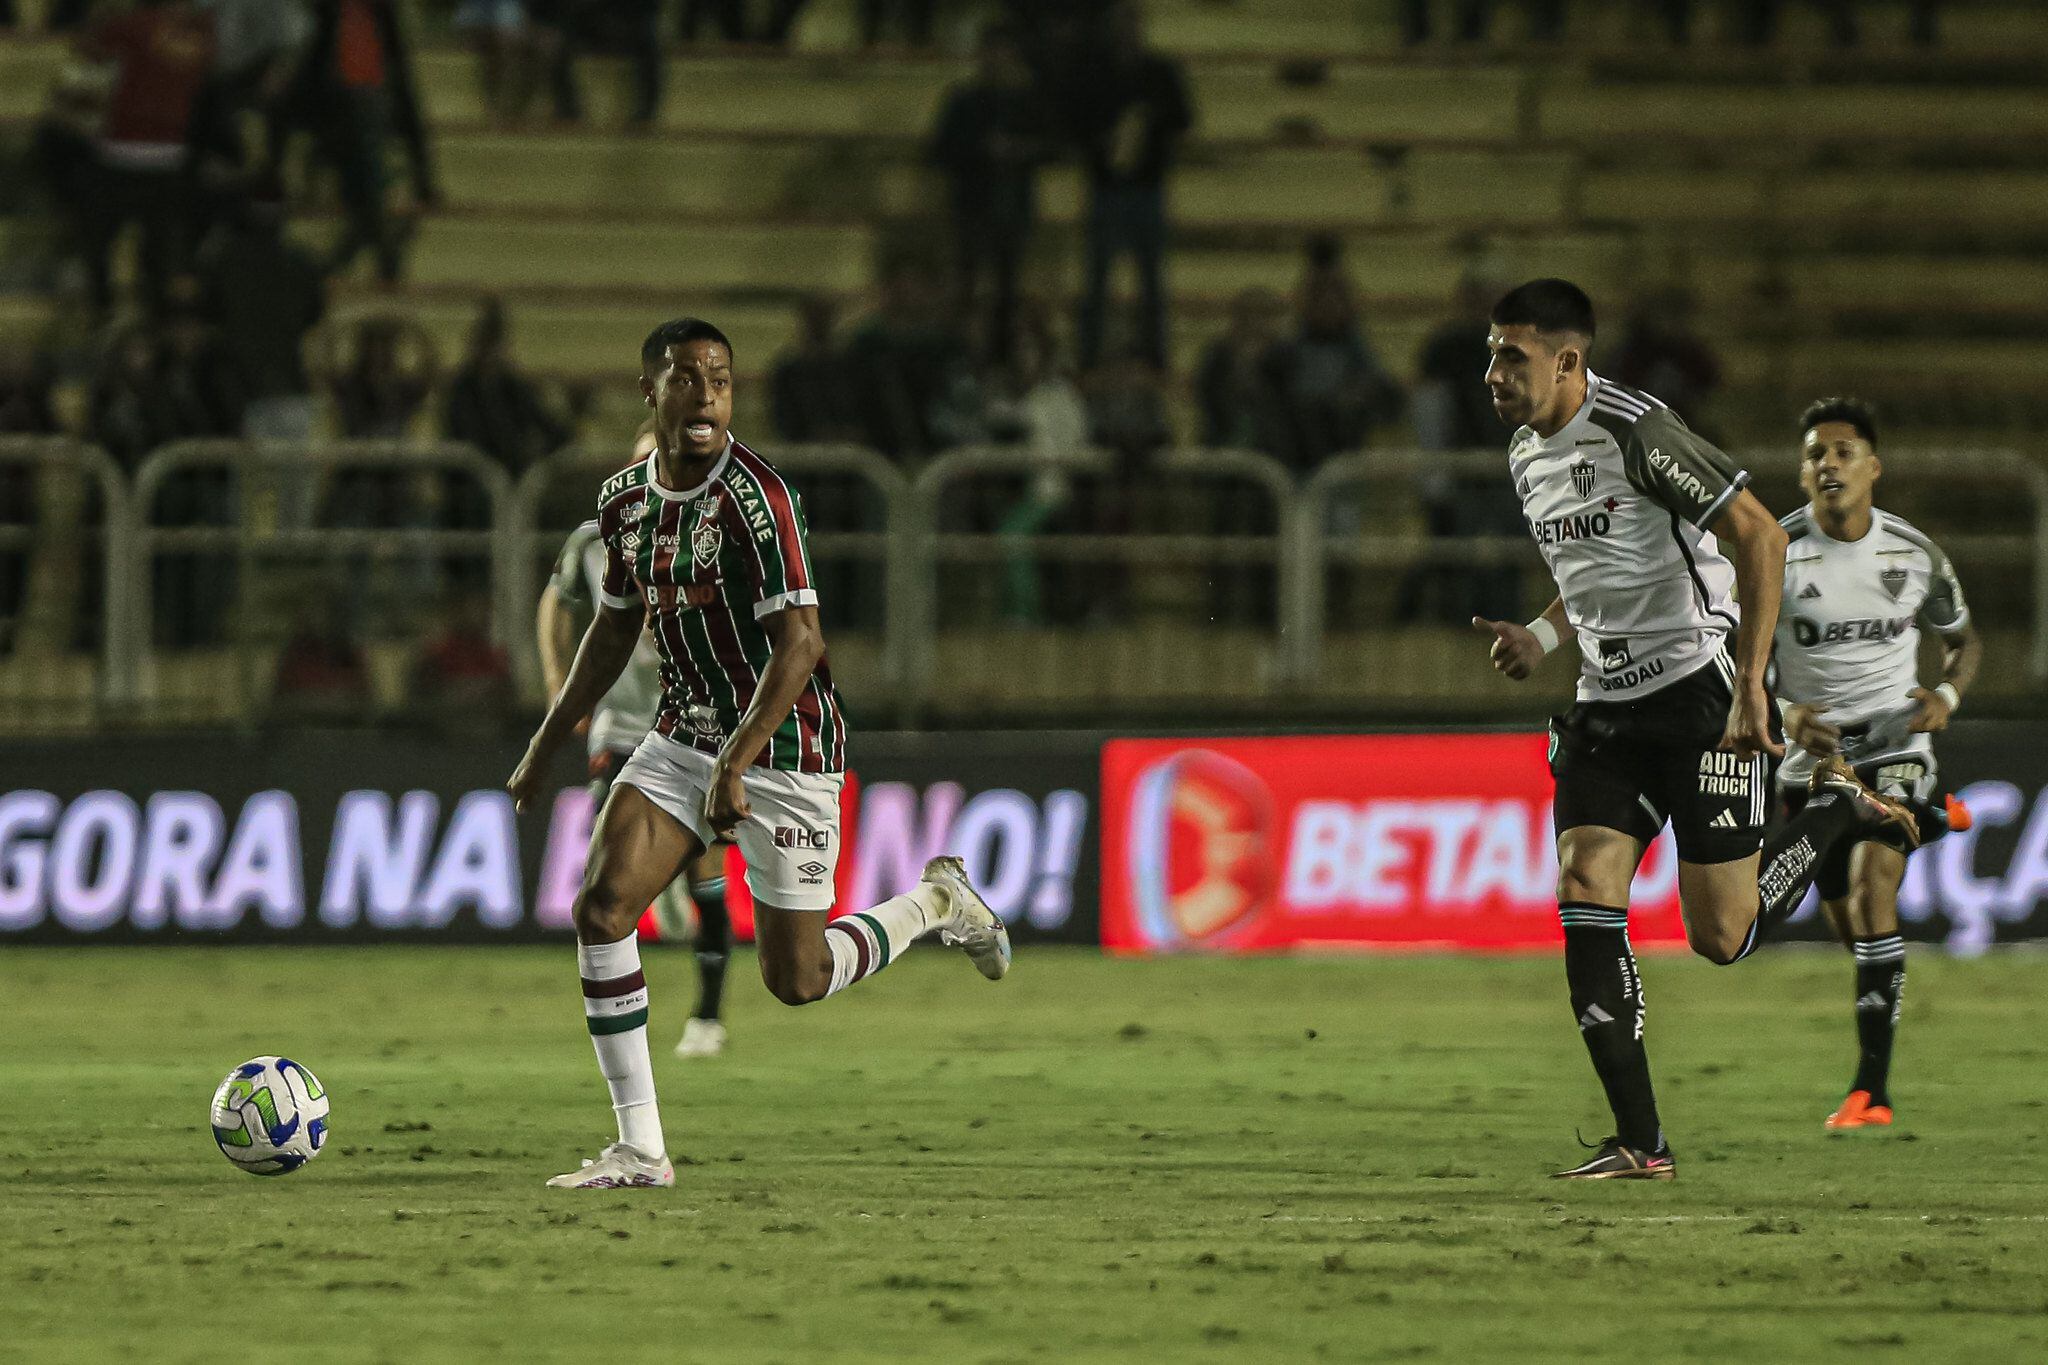 Fluminense 1 x 1 Atlético-MG: gols, melhores momentos e ficha do jogo -  Superesportes